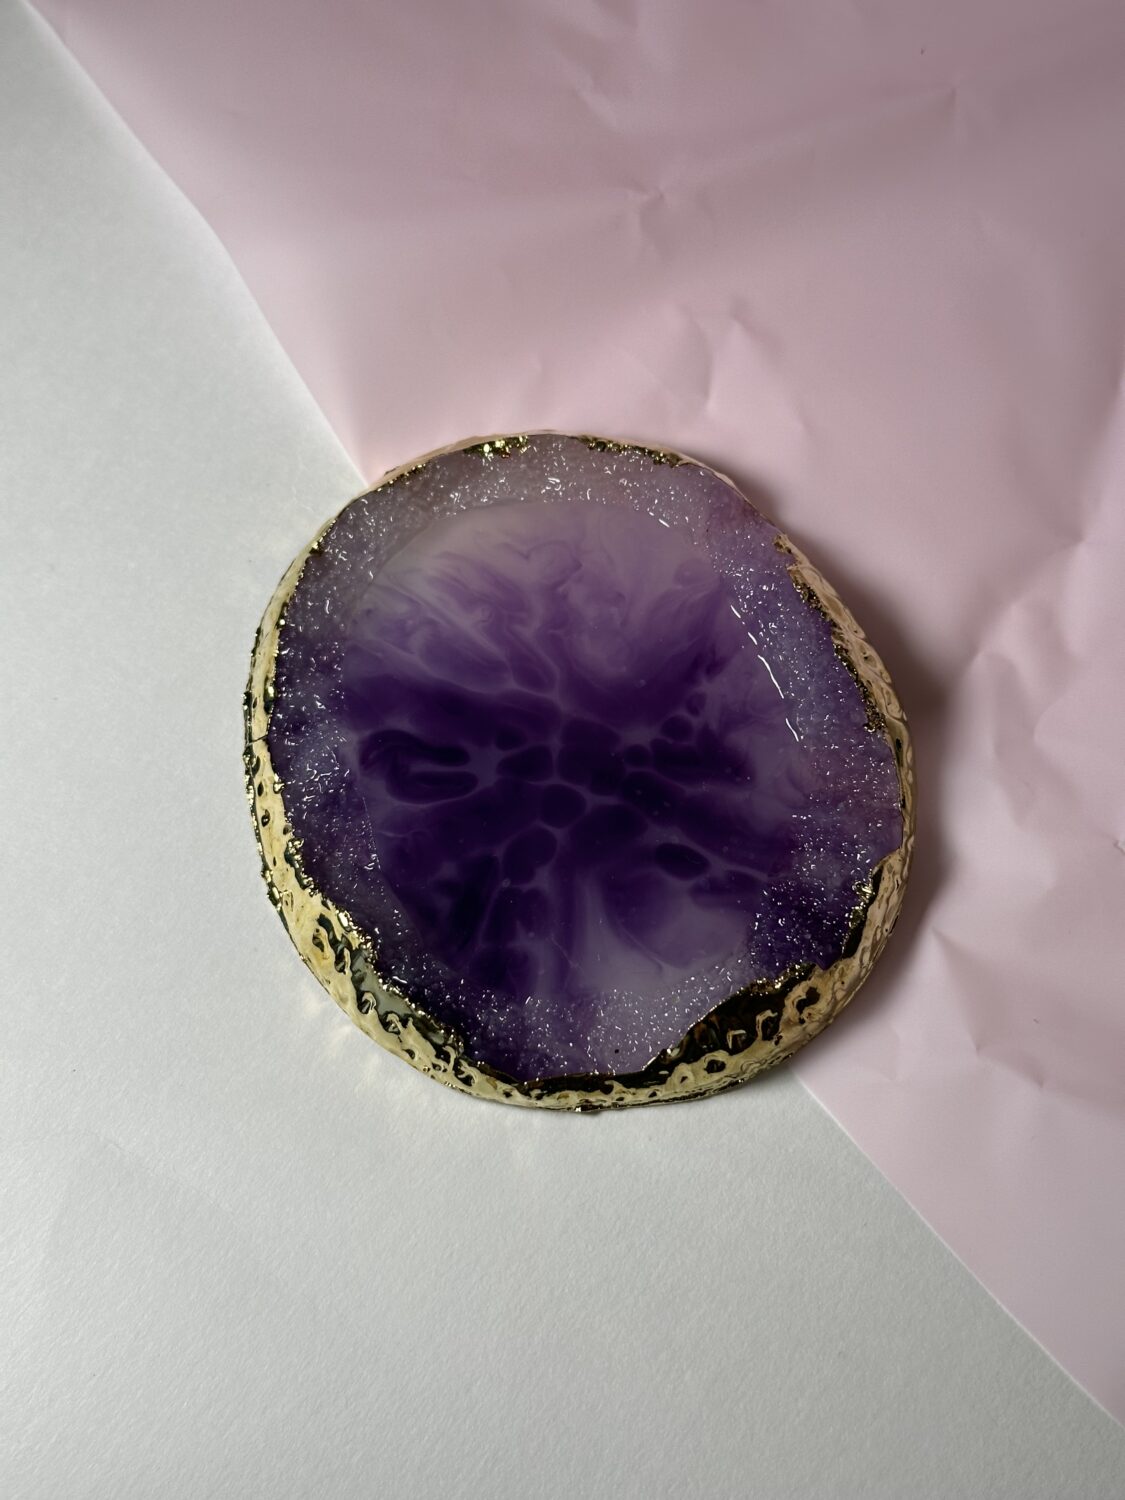 Пластина Драгоценный камень фиолетовый